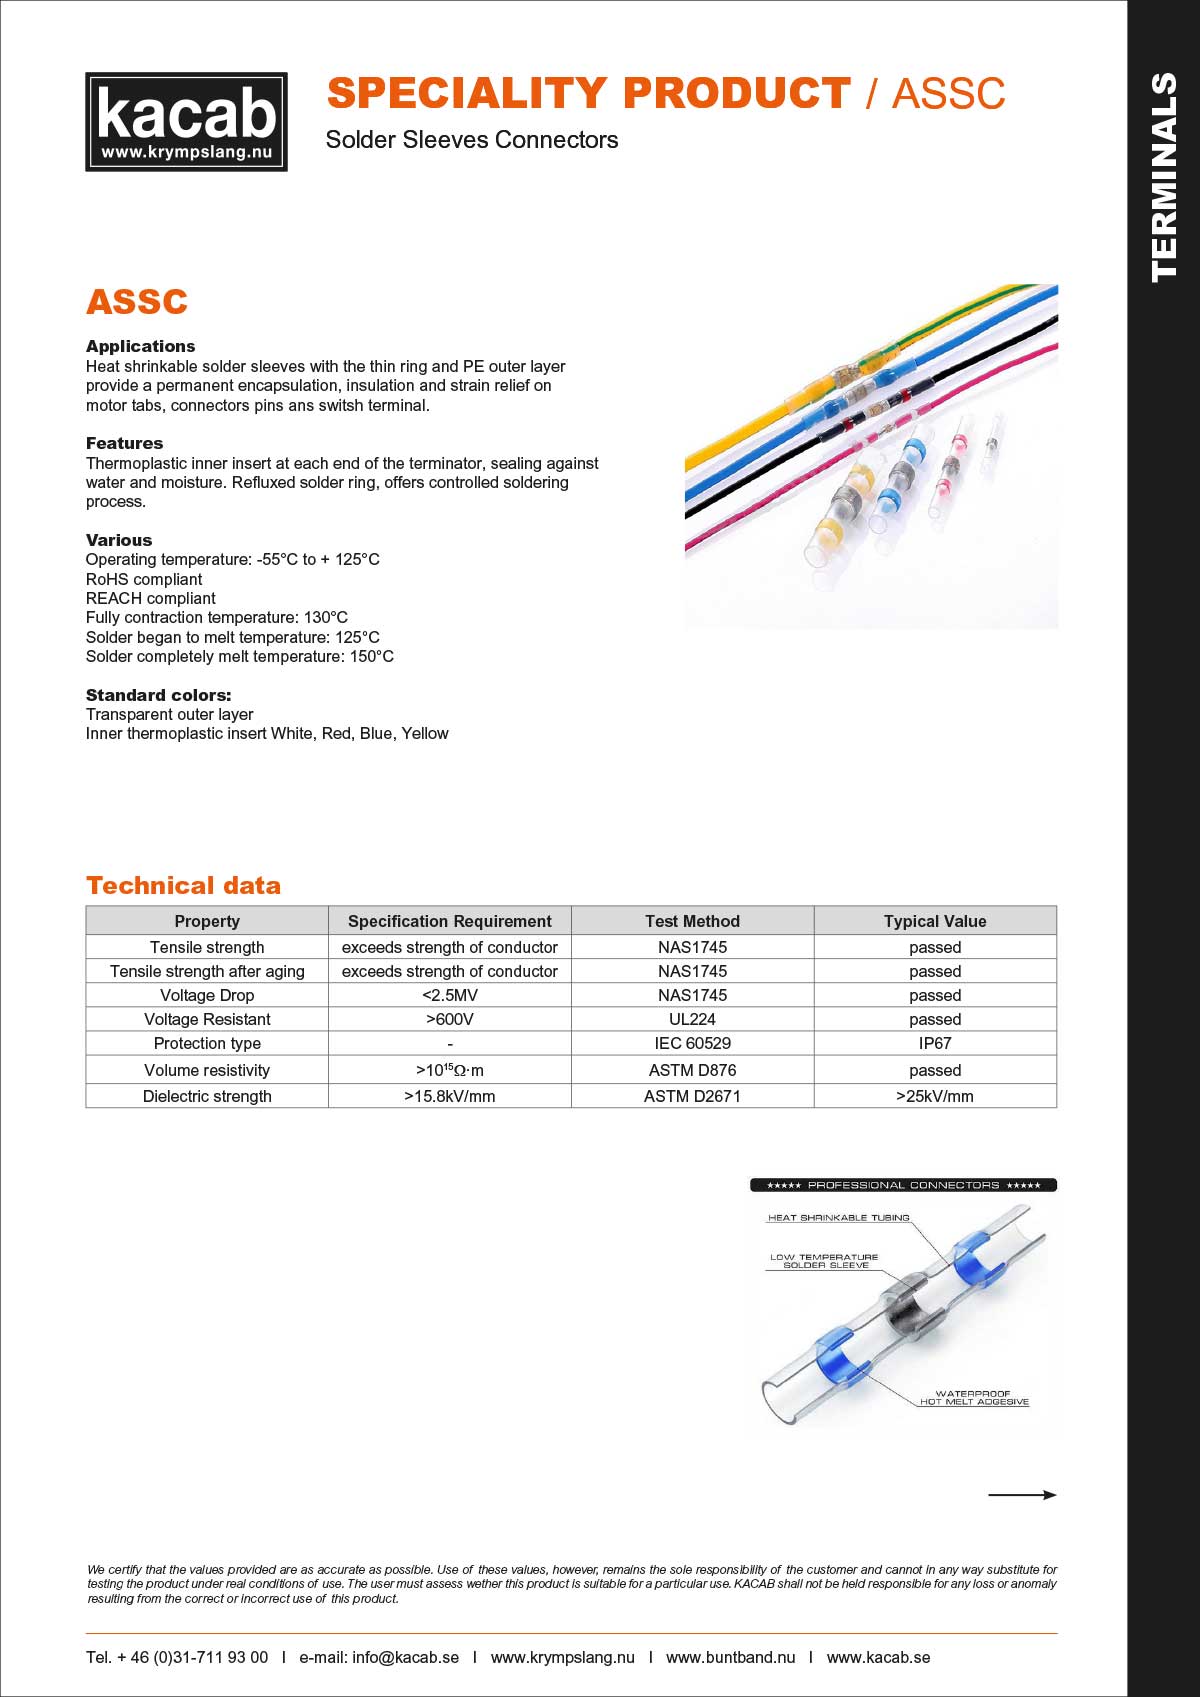 ASSC-solder sleeves connectors